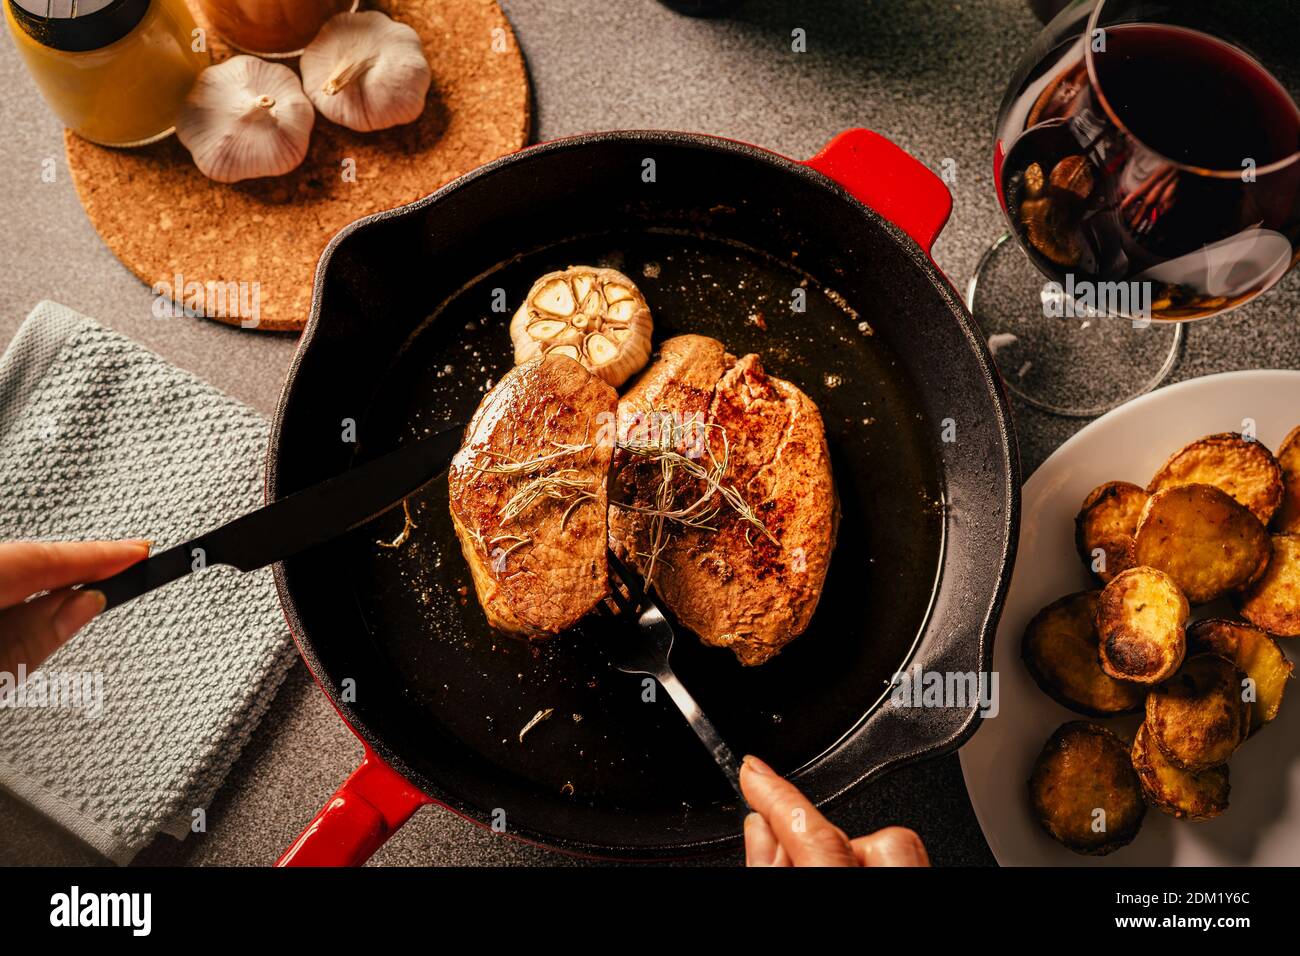 Steak Abendessen Vorbereitung.Weibliche Hände servieren und dekorieren einen besonderen Anlass Gourmet-Mahlzeit. Filet Mignon und gebackene Kartoffeln mit geröstetem Knoblauch und Stockfoto